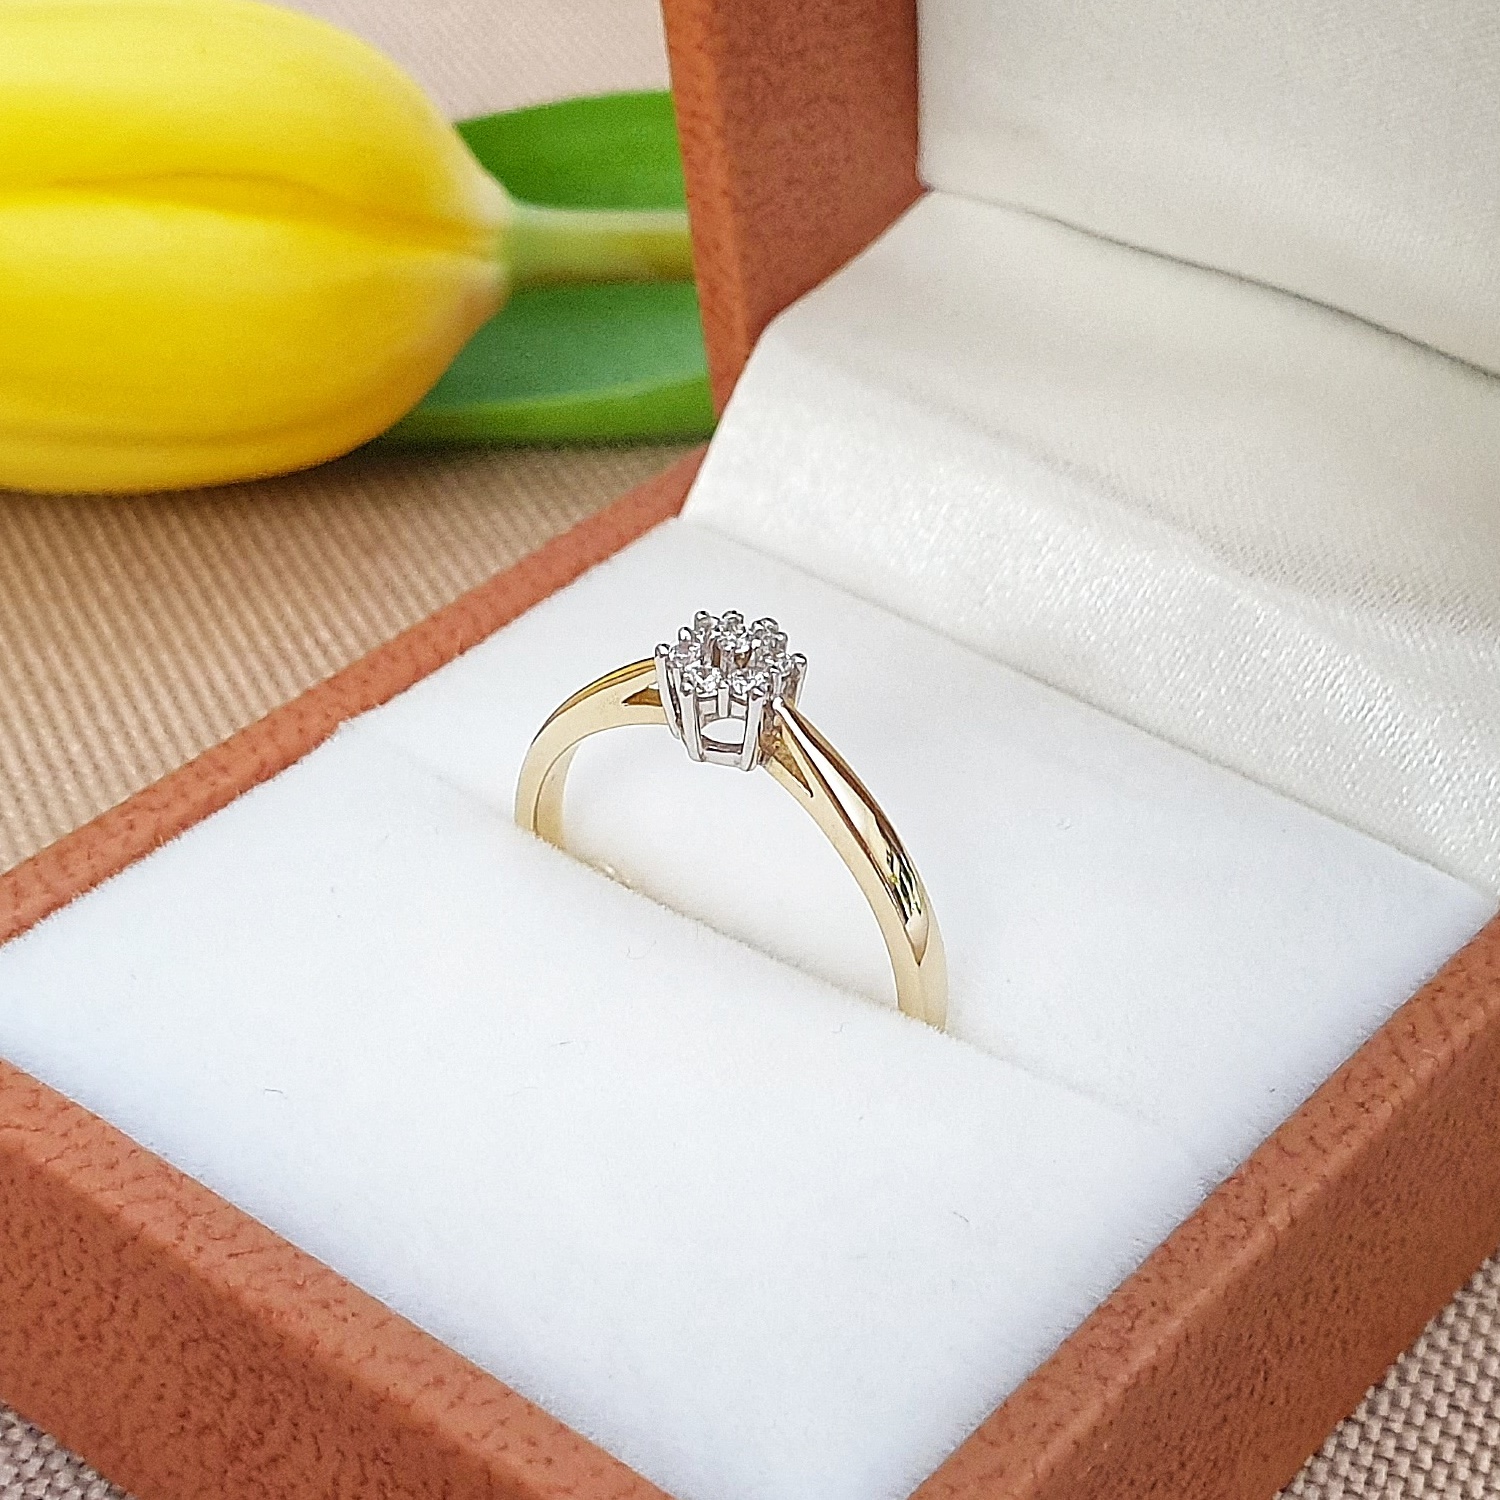 Romantyczny, złoty pierścionek zaręczynowy z 7 cyrkoniami w kwiatowej oprawie